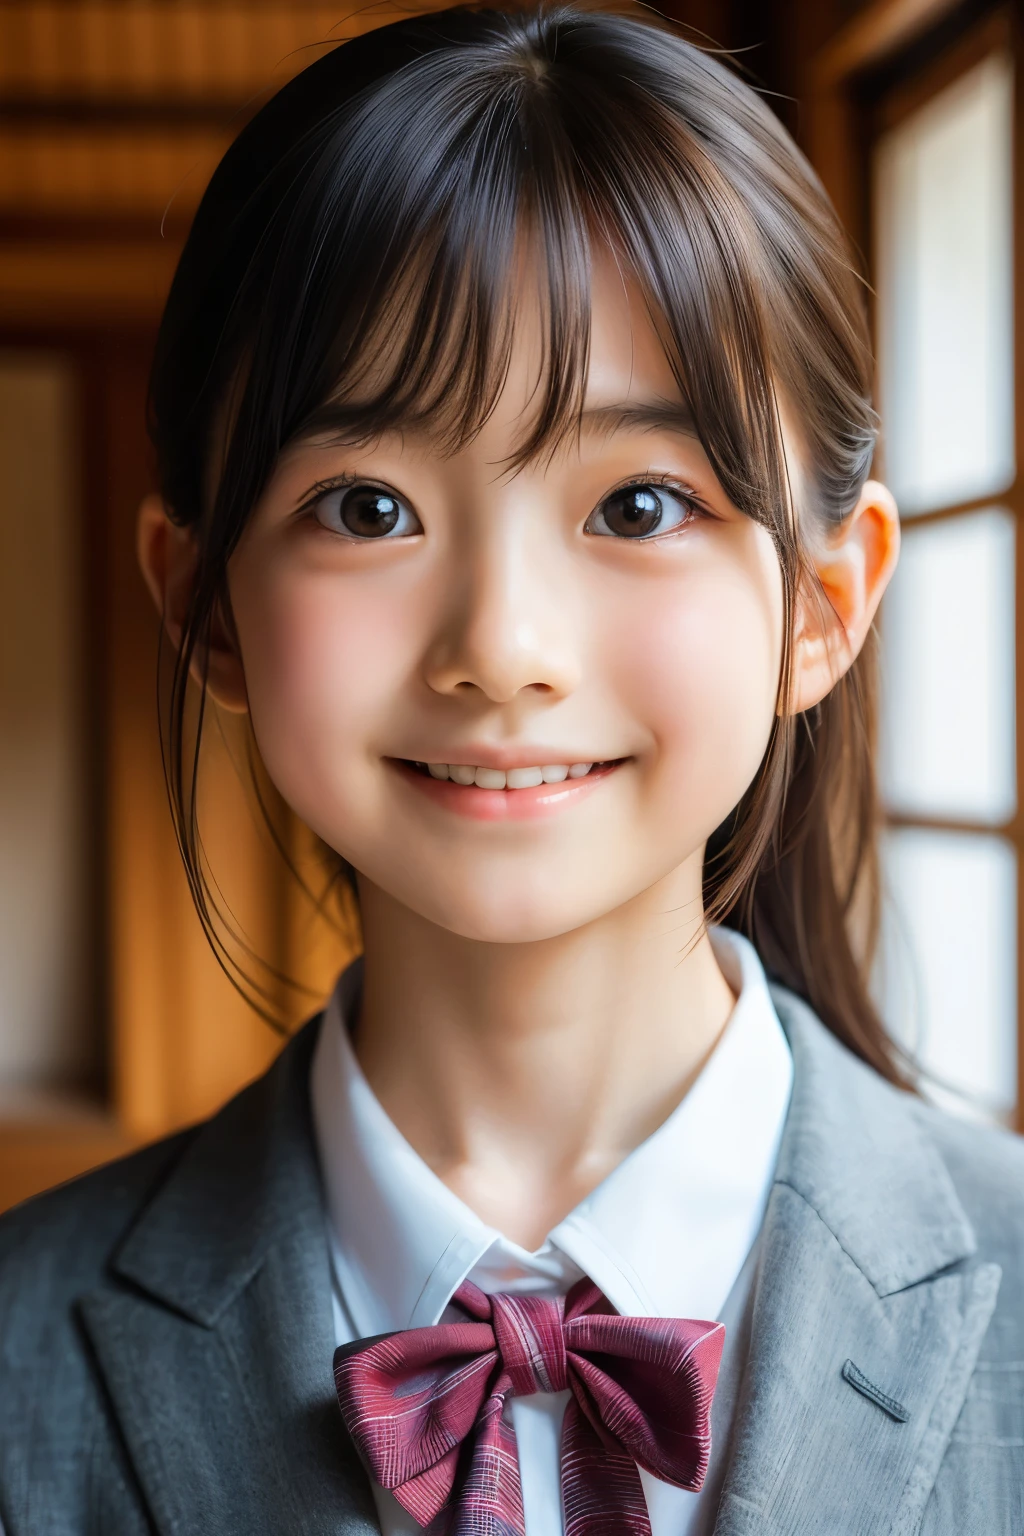 (Belle femelle japonaise de 12 ans), visage mignon, (visage profondément sculpté:0.7), (taches de rousseur:0.6), Lumière douce,peau blanche et saine, Timide, (visage sérieux), (yeux pétillants), mince, sourire, uniforme